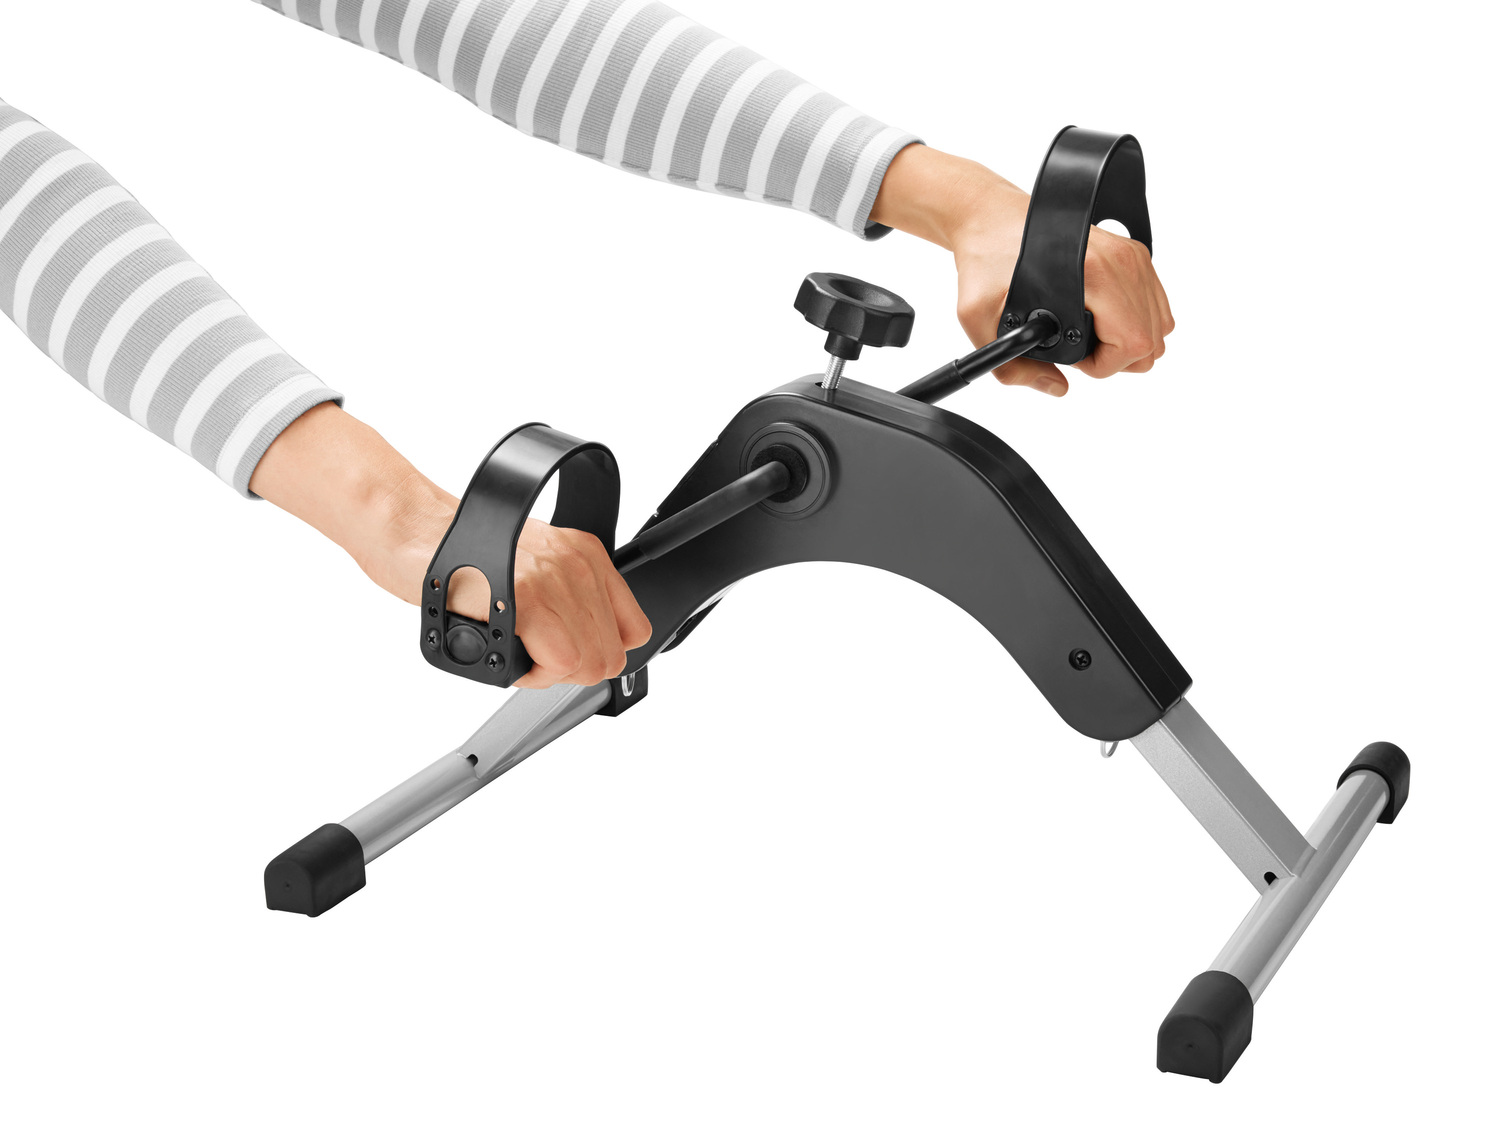 Urządzenie do treningu mięśni ramion i nóg , cena 79,90 PLN 
- baterie w zestawie
- ...